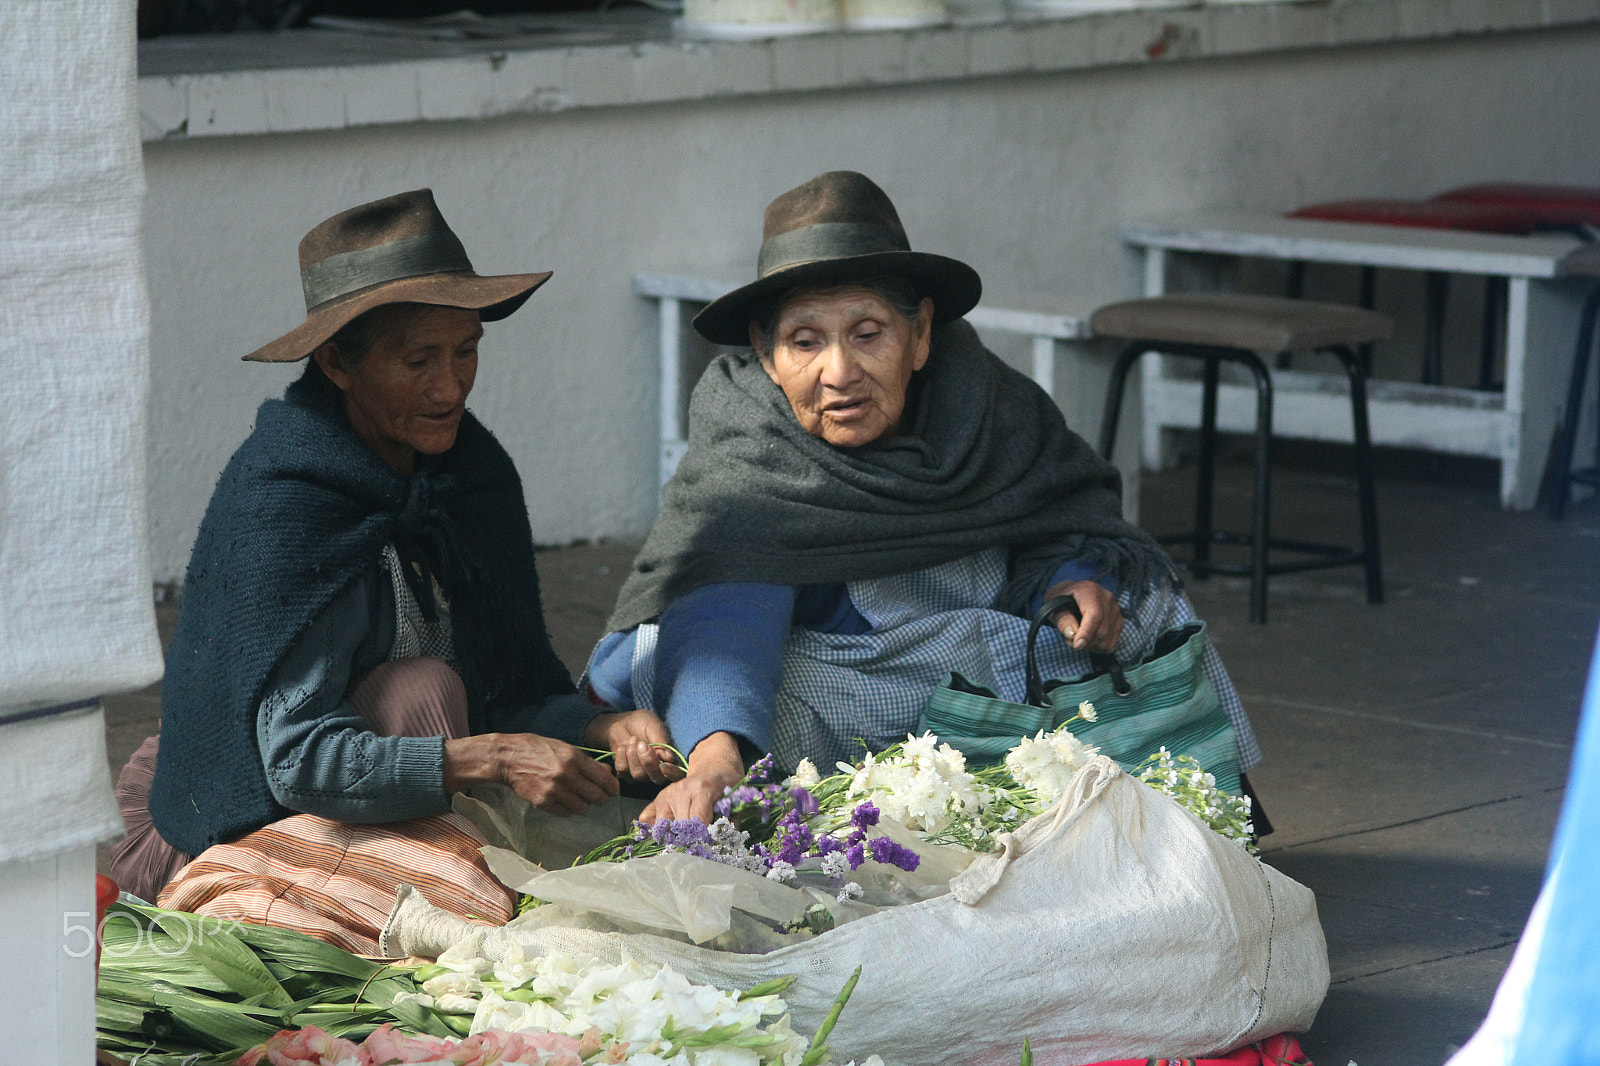 Canon EOS 60D sample photo. Mujeres vendiendo flores - bolivia photography